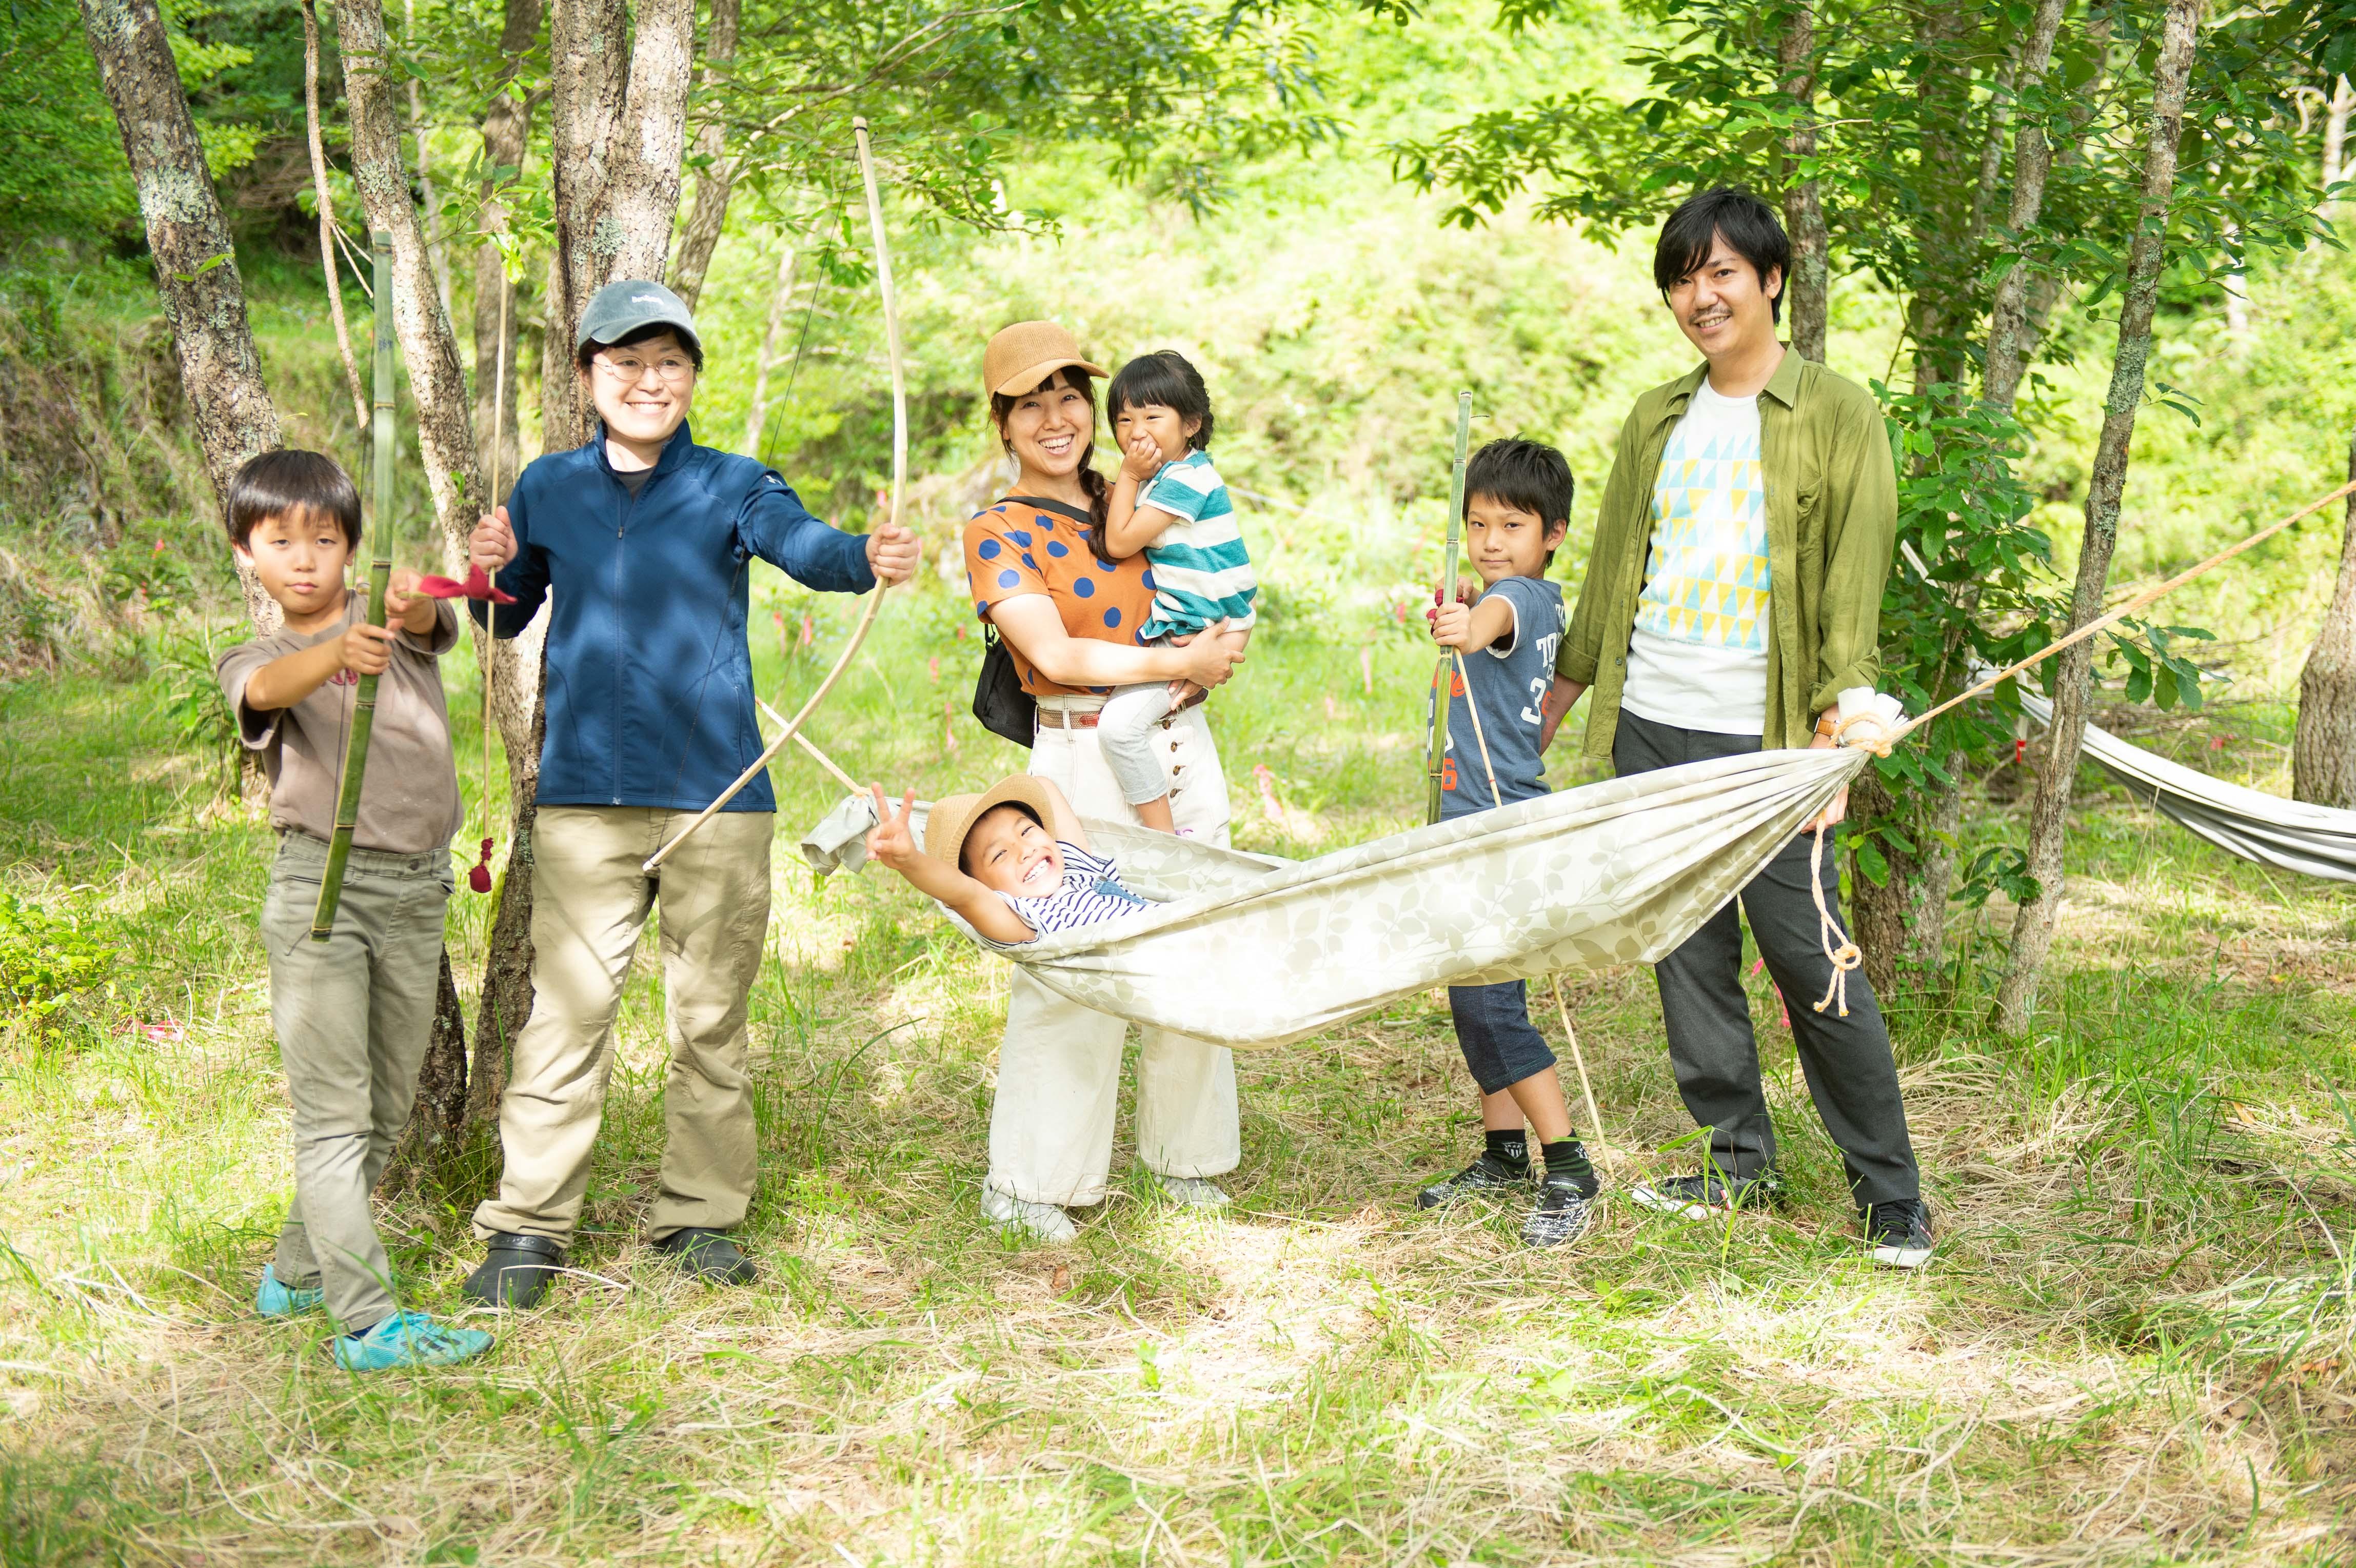 让孩子们微笑！在irokumakids打造的游乐场享受熊野的大自然♪尽情玩耍，保持身心健康！